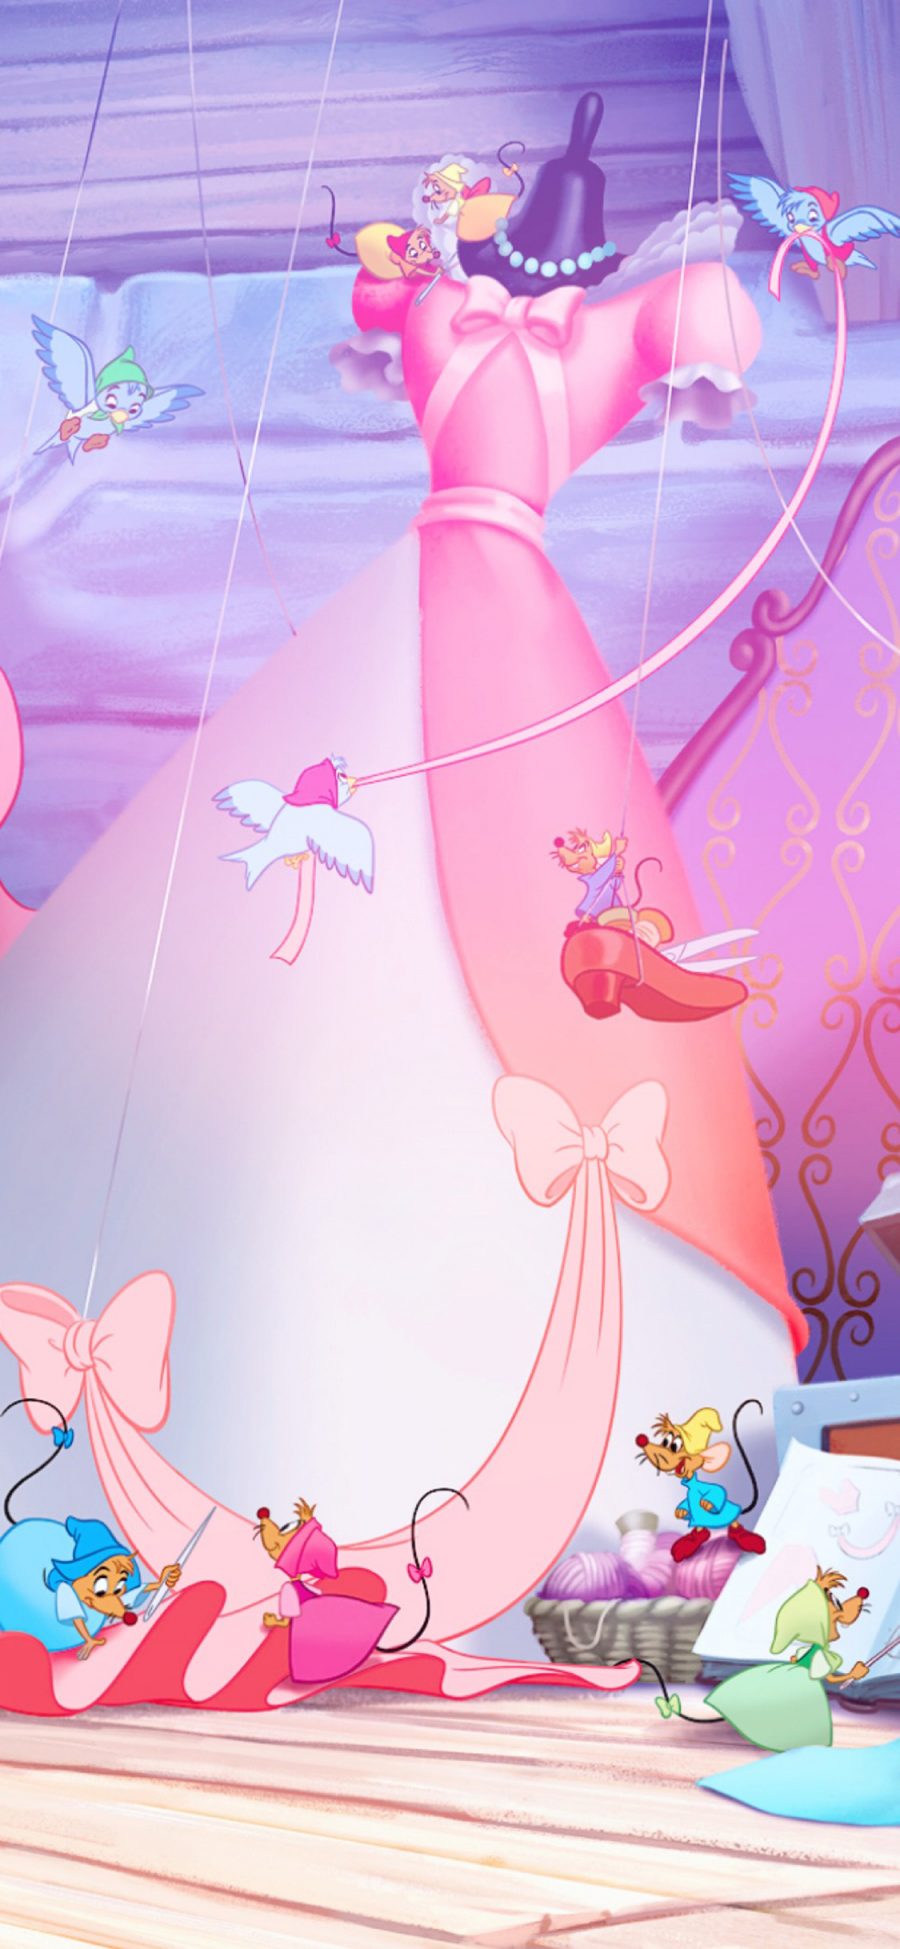 [2436×1125]迪士尼 灰姑娘 童话 公主裙 老鼠 苹果手机动漫壁纸图片